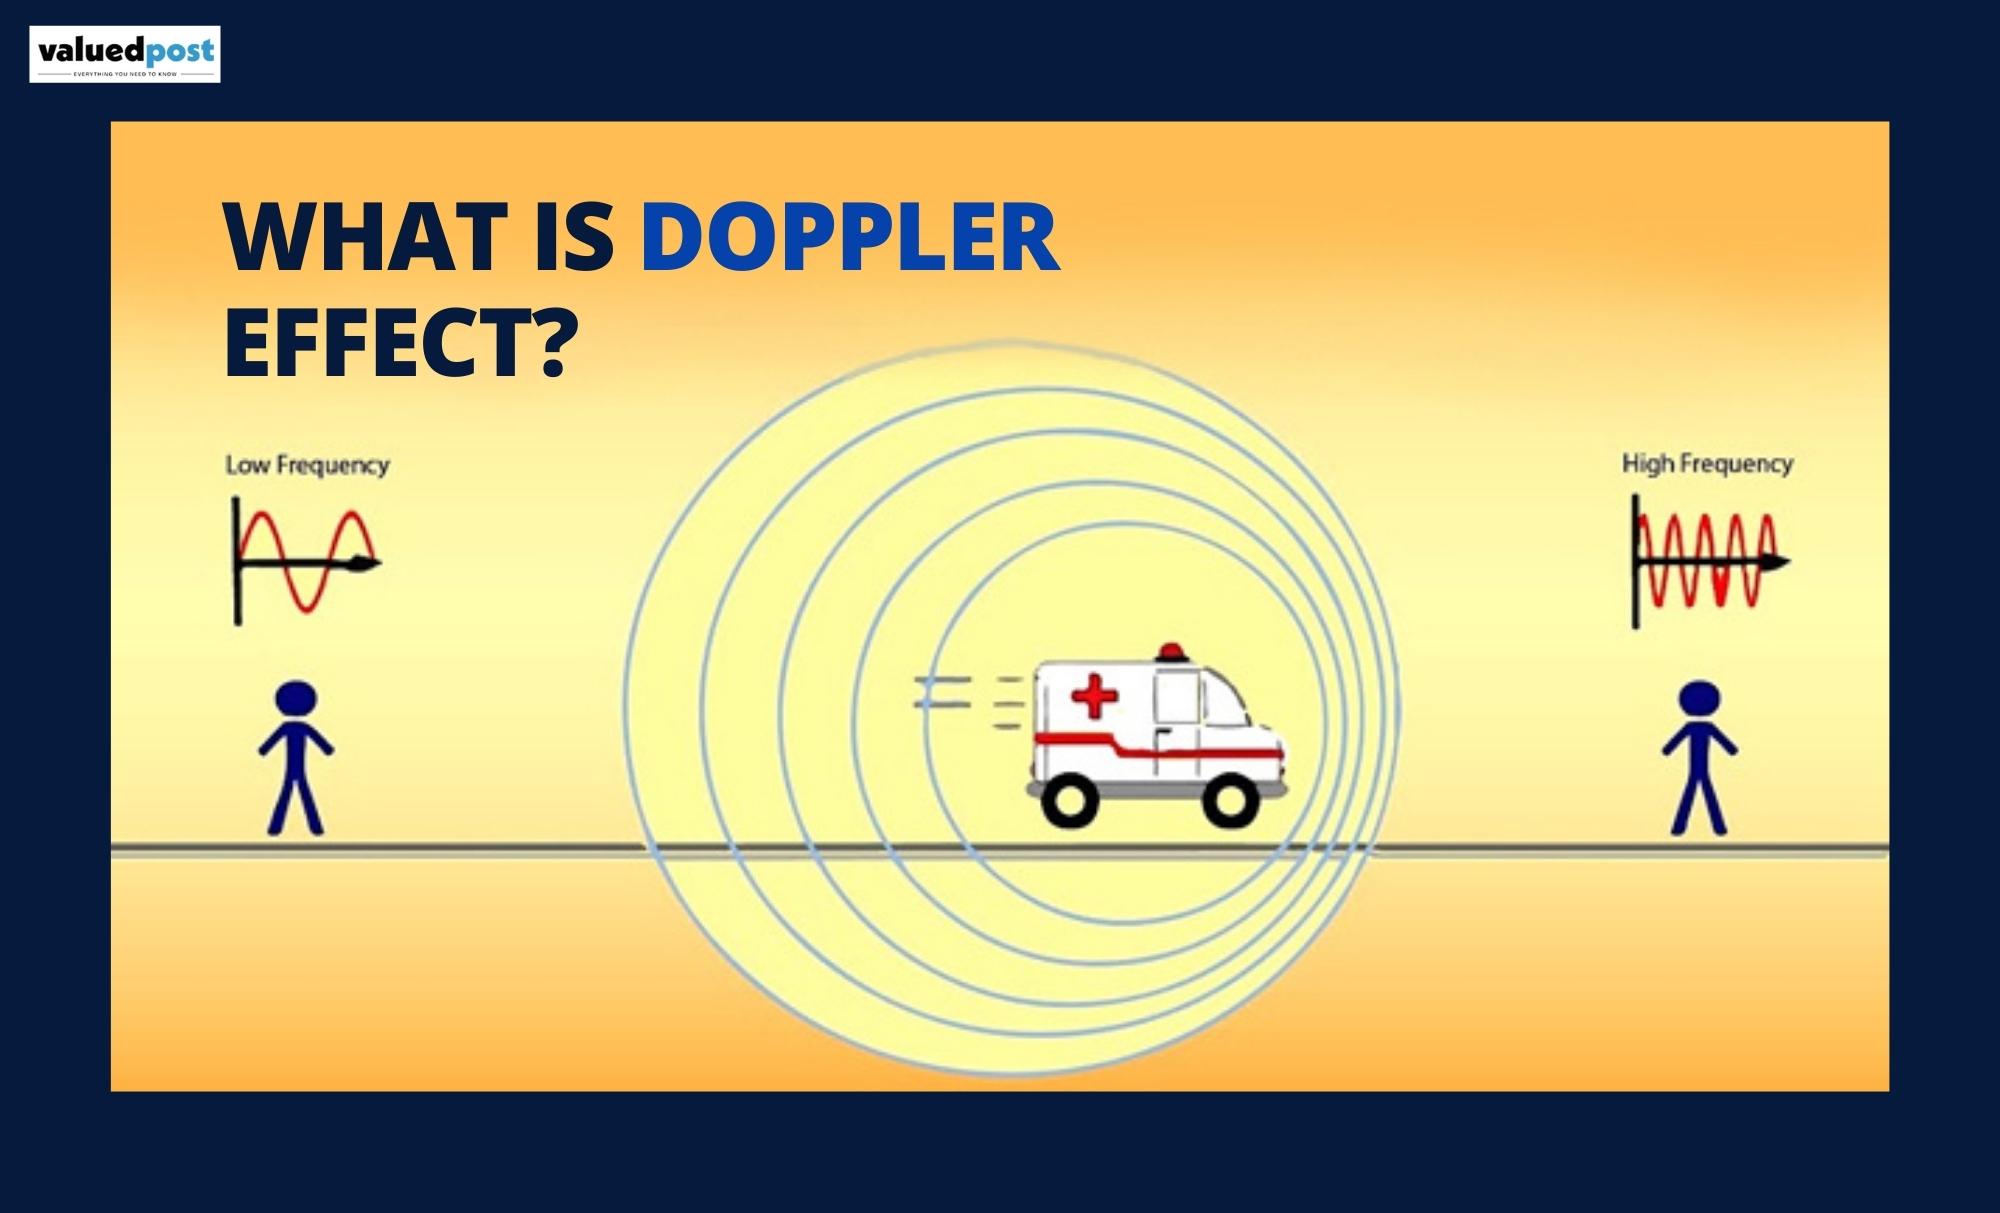 How does doppler radar work?